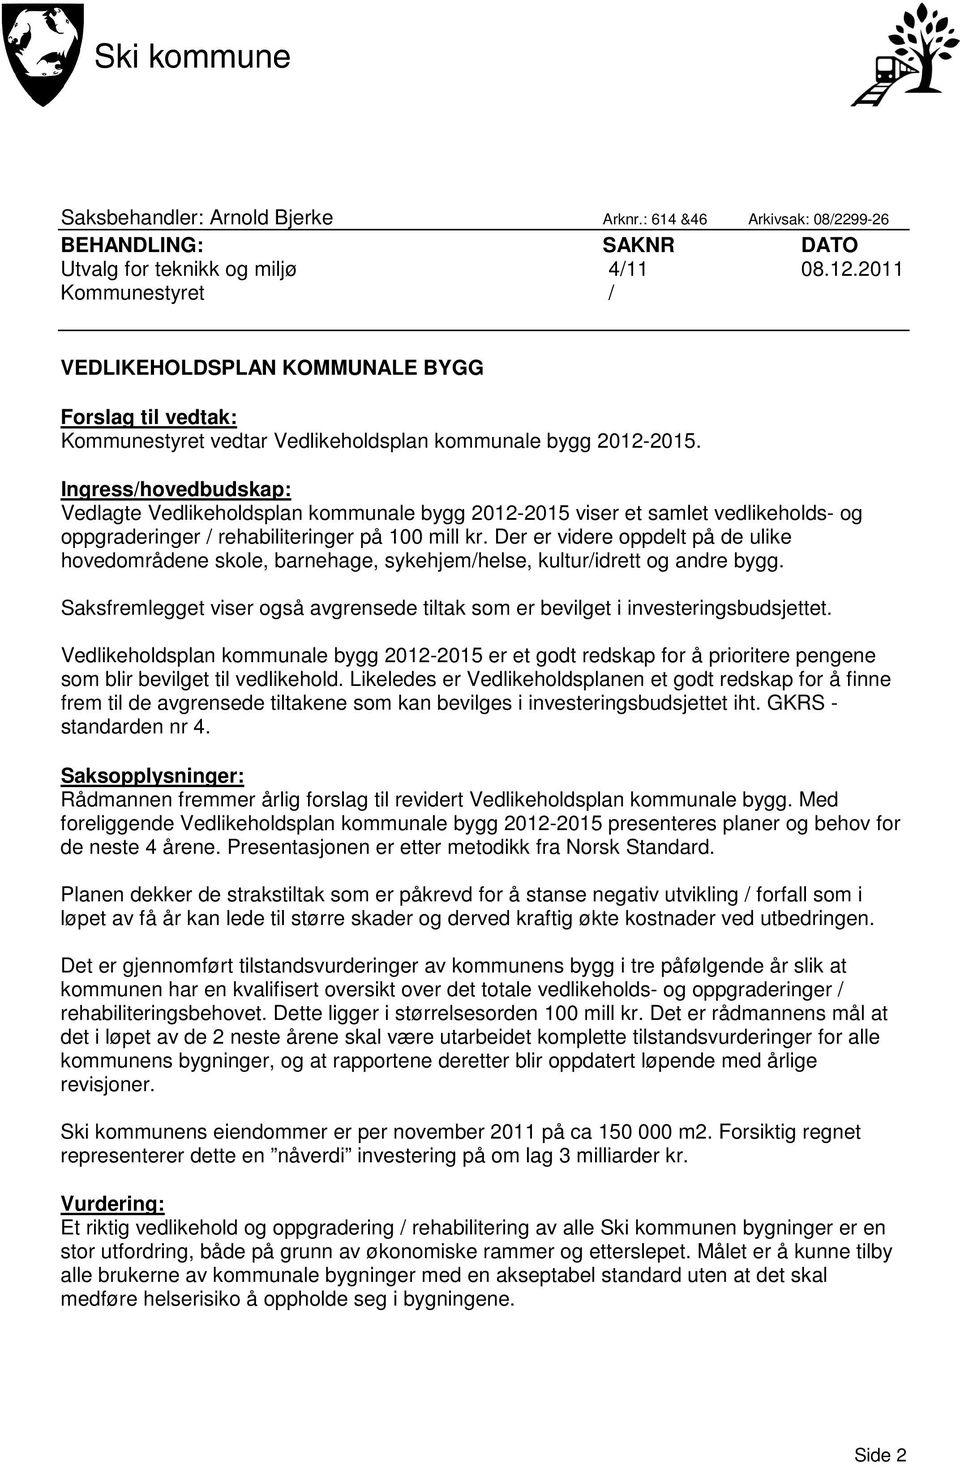 Ingress/hovedbudskap: Vedlagte Vedlikeholdsplan kommunale bygg 2012-2015 viser et samlet vedlikeholds- og oppgraderinger / rehabiliteringer på 100 mill kr.